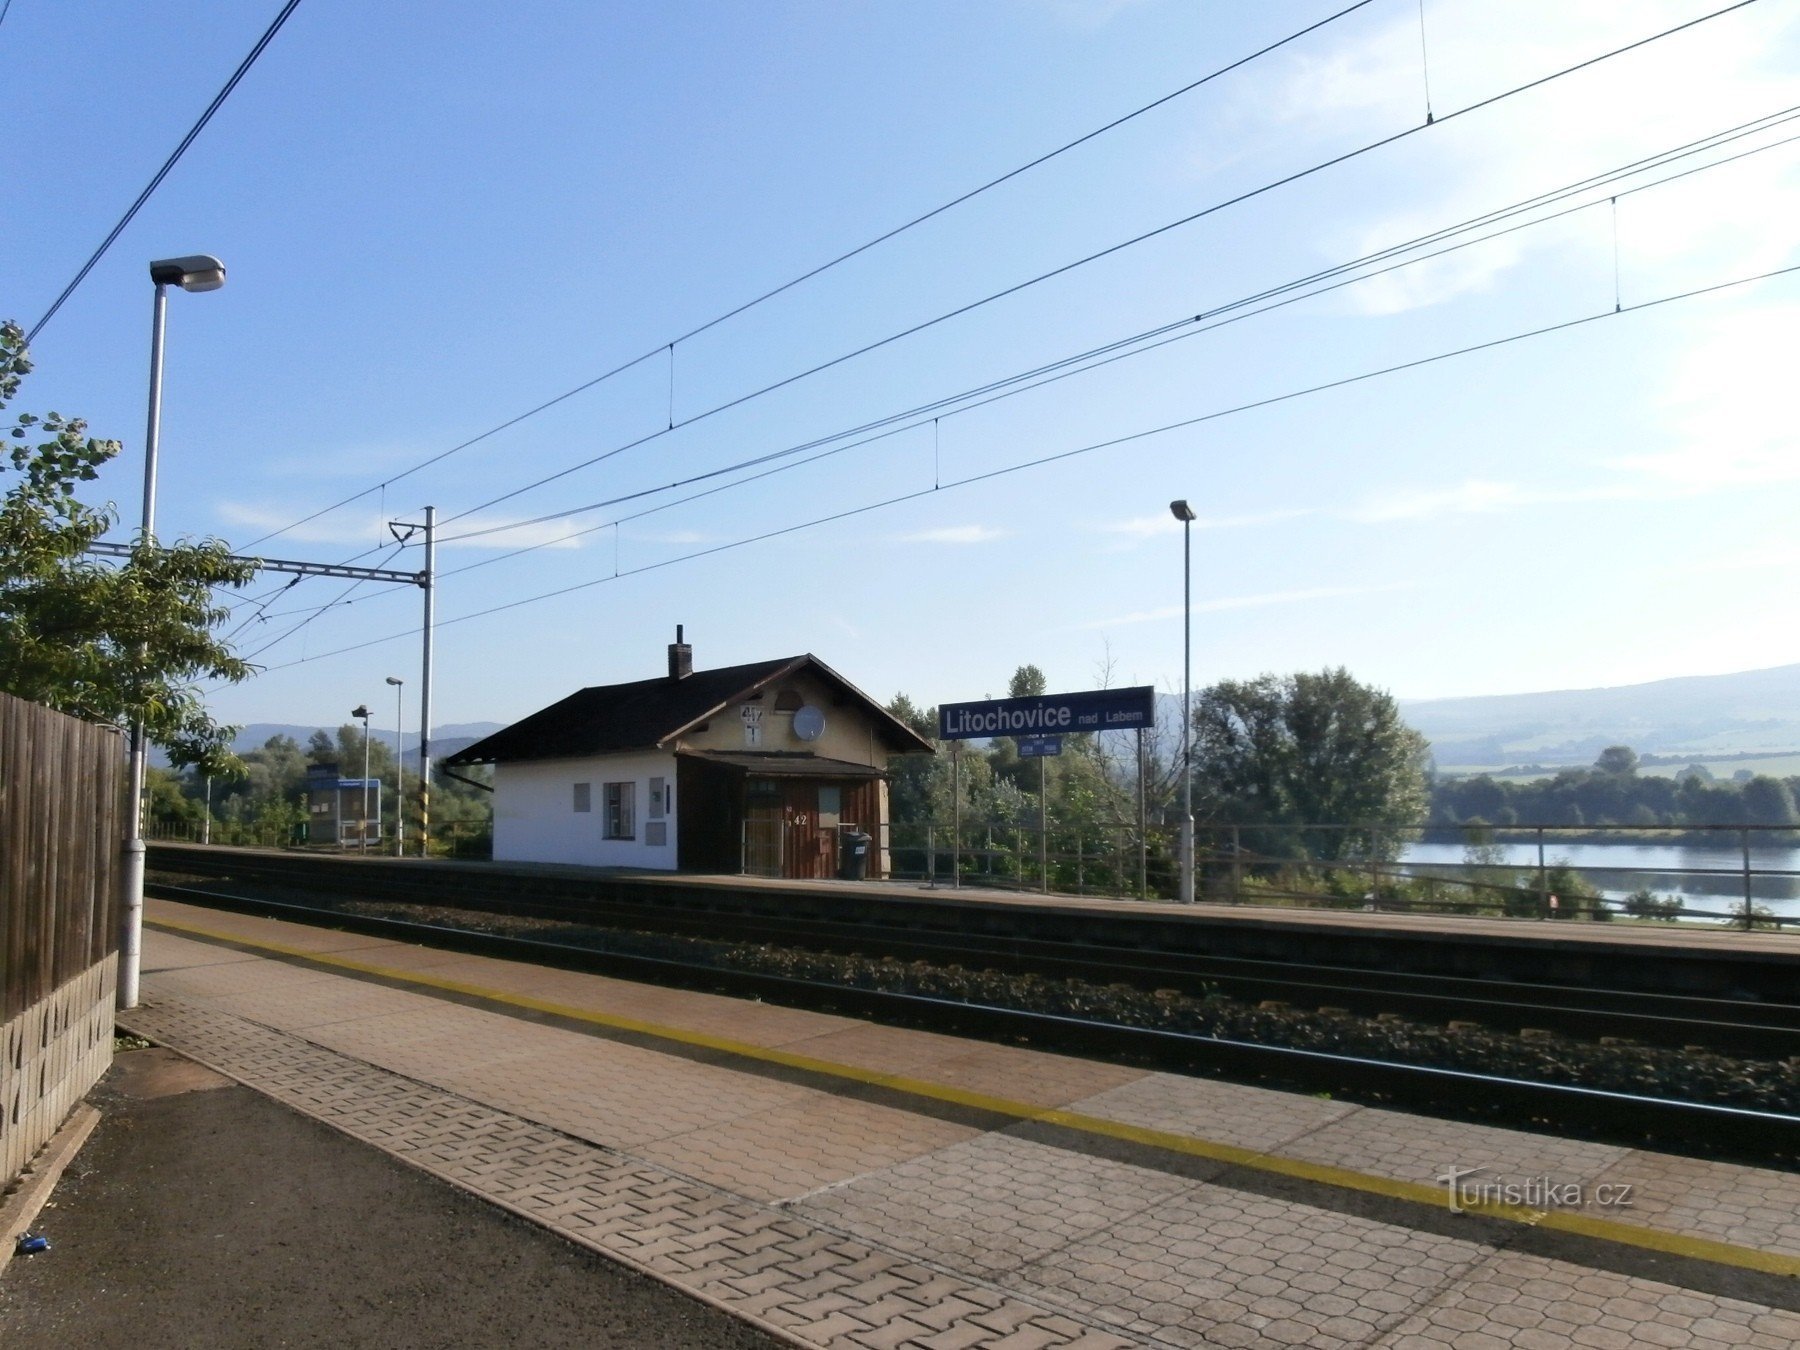 1. Στάση τρένου Litochovice nad Labem